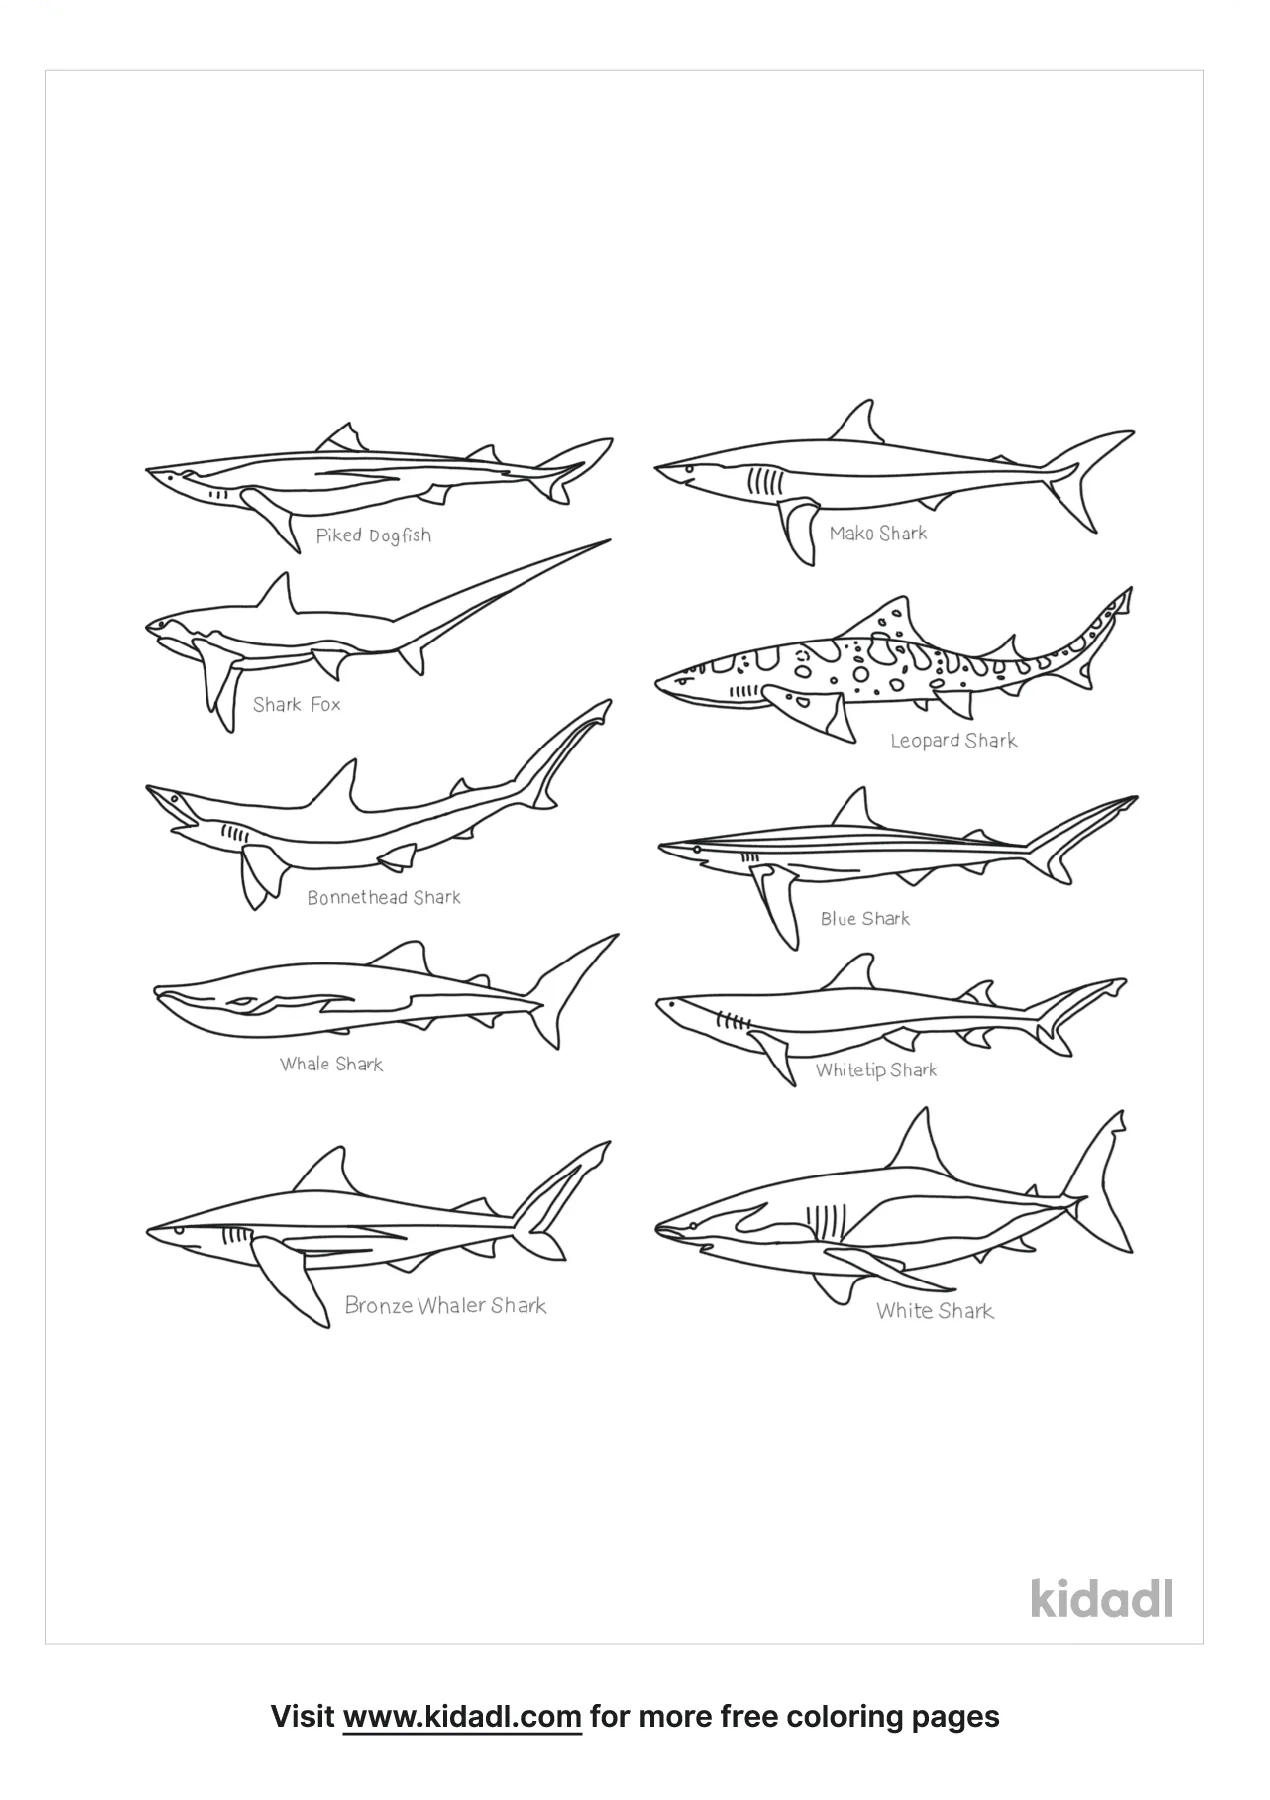 Types Of Sharks   Kidadl